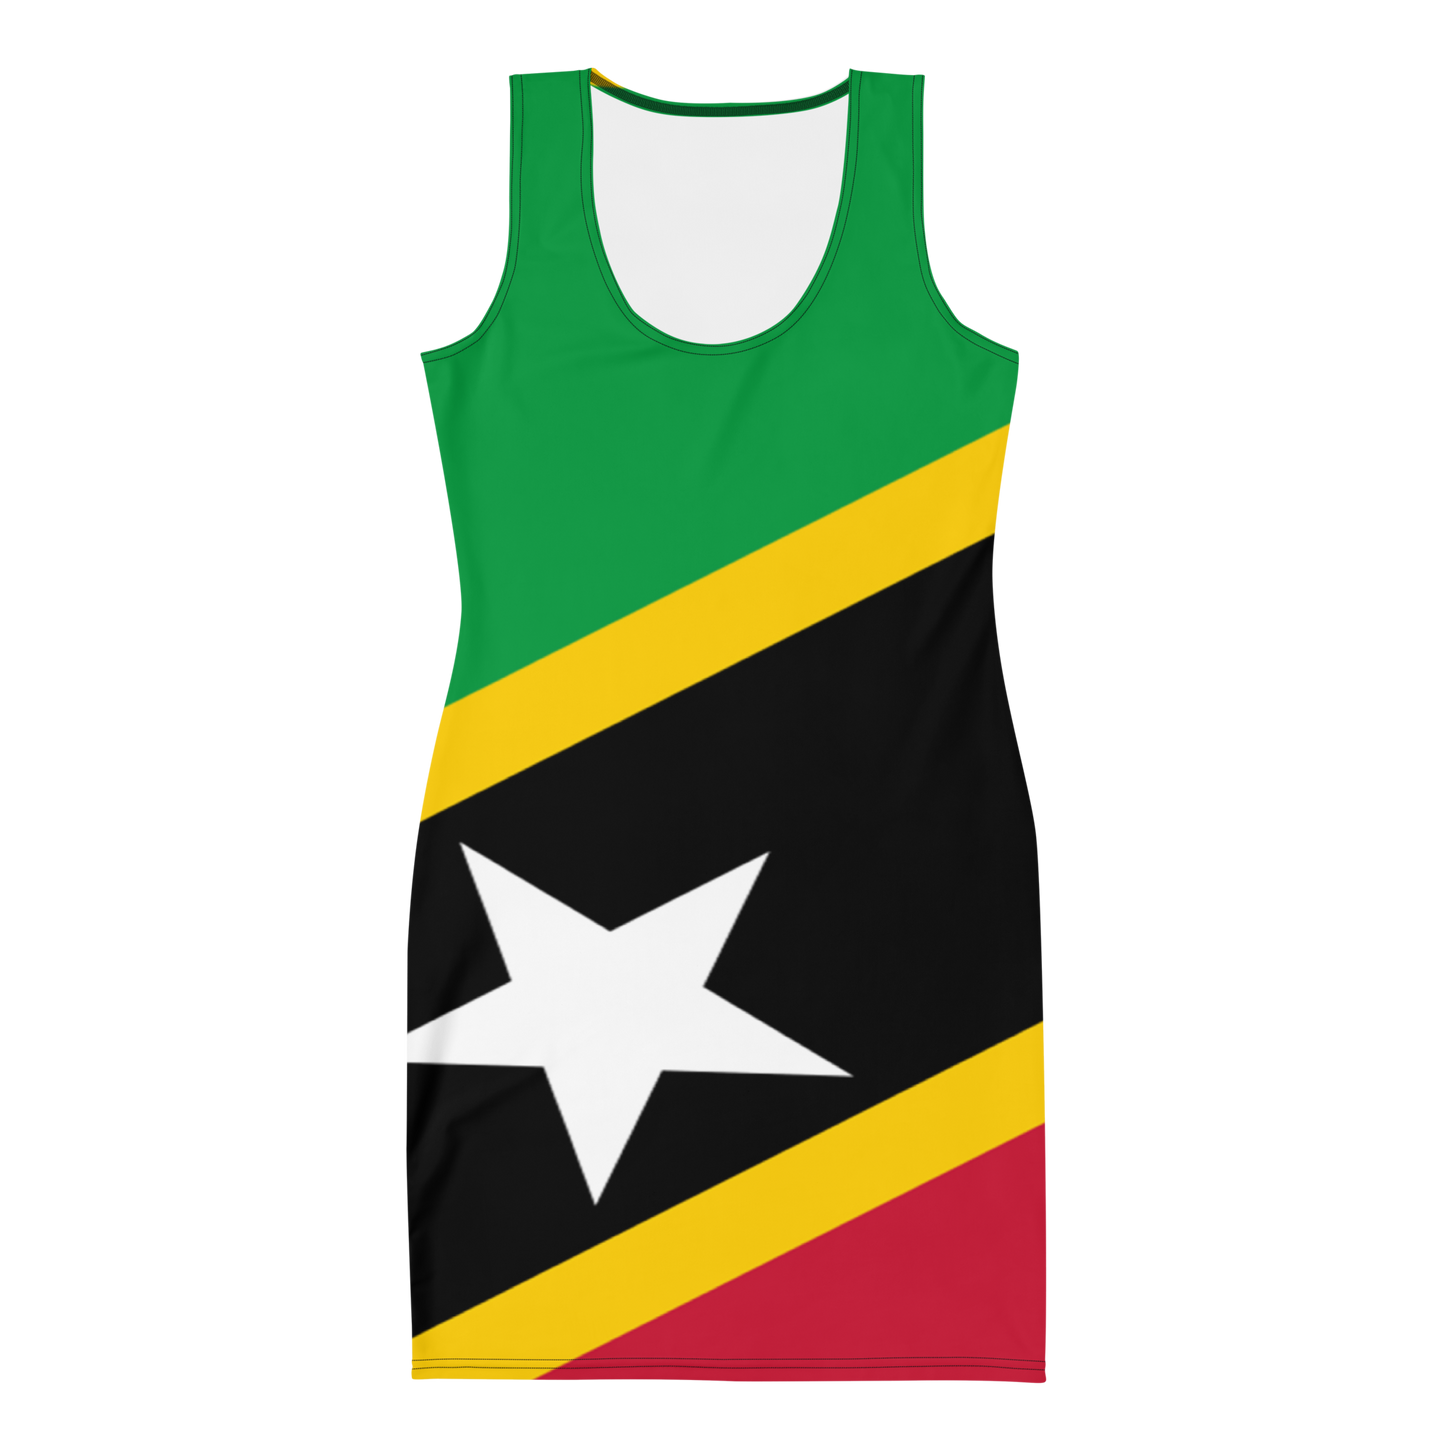 St. Kitts & Nevis Dress